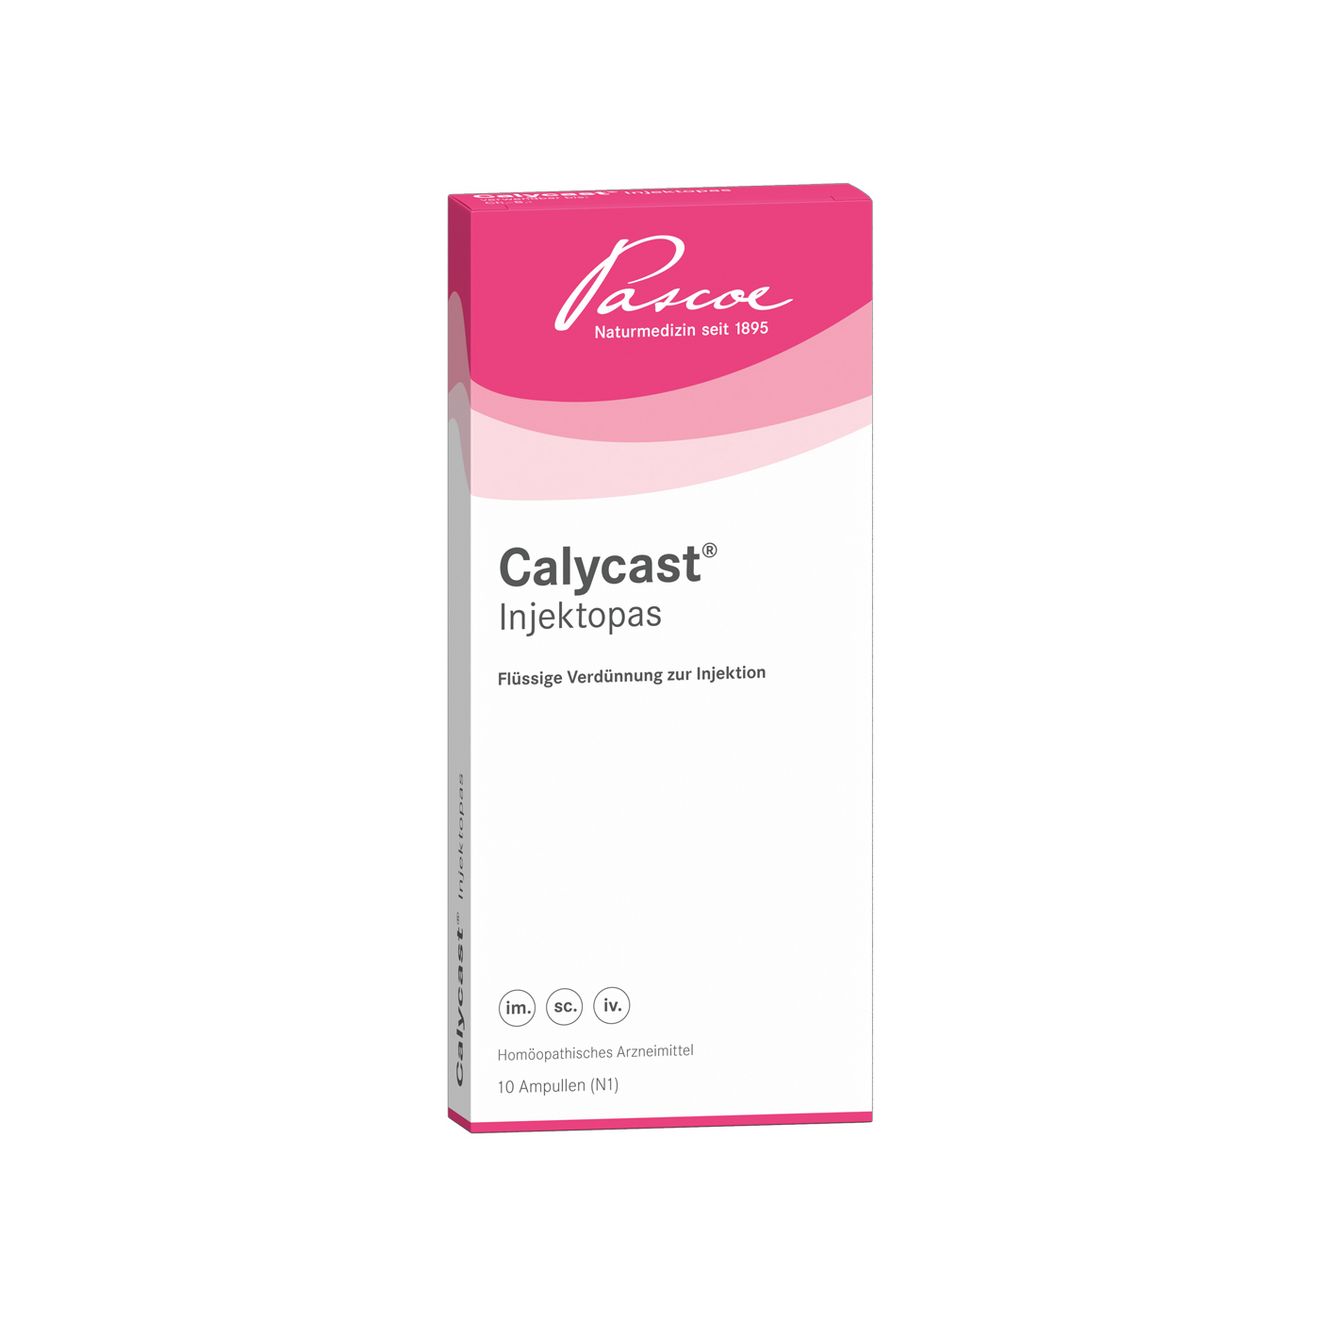 Calycast-Injektopas P 10 x 2 ml Packshot PZN 04853030